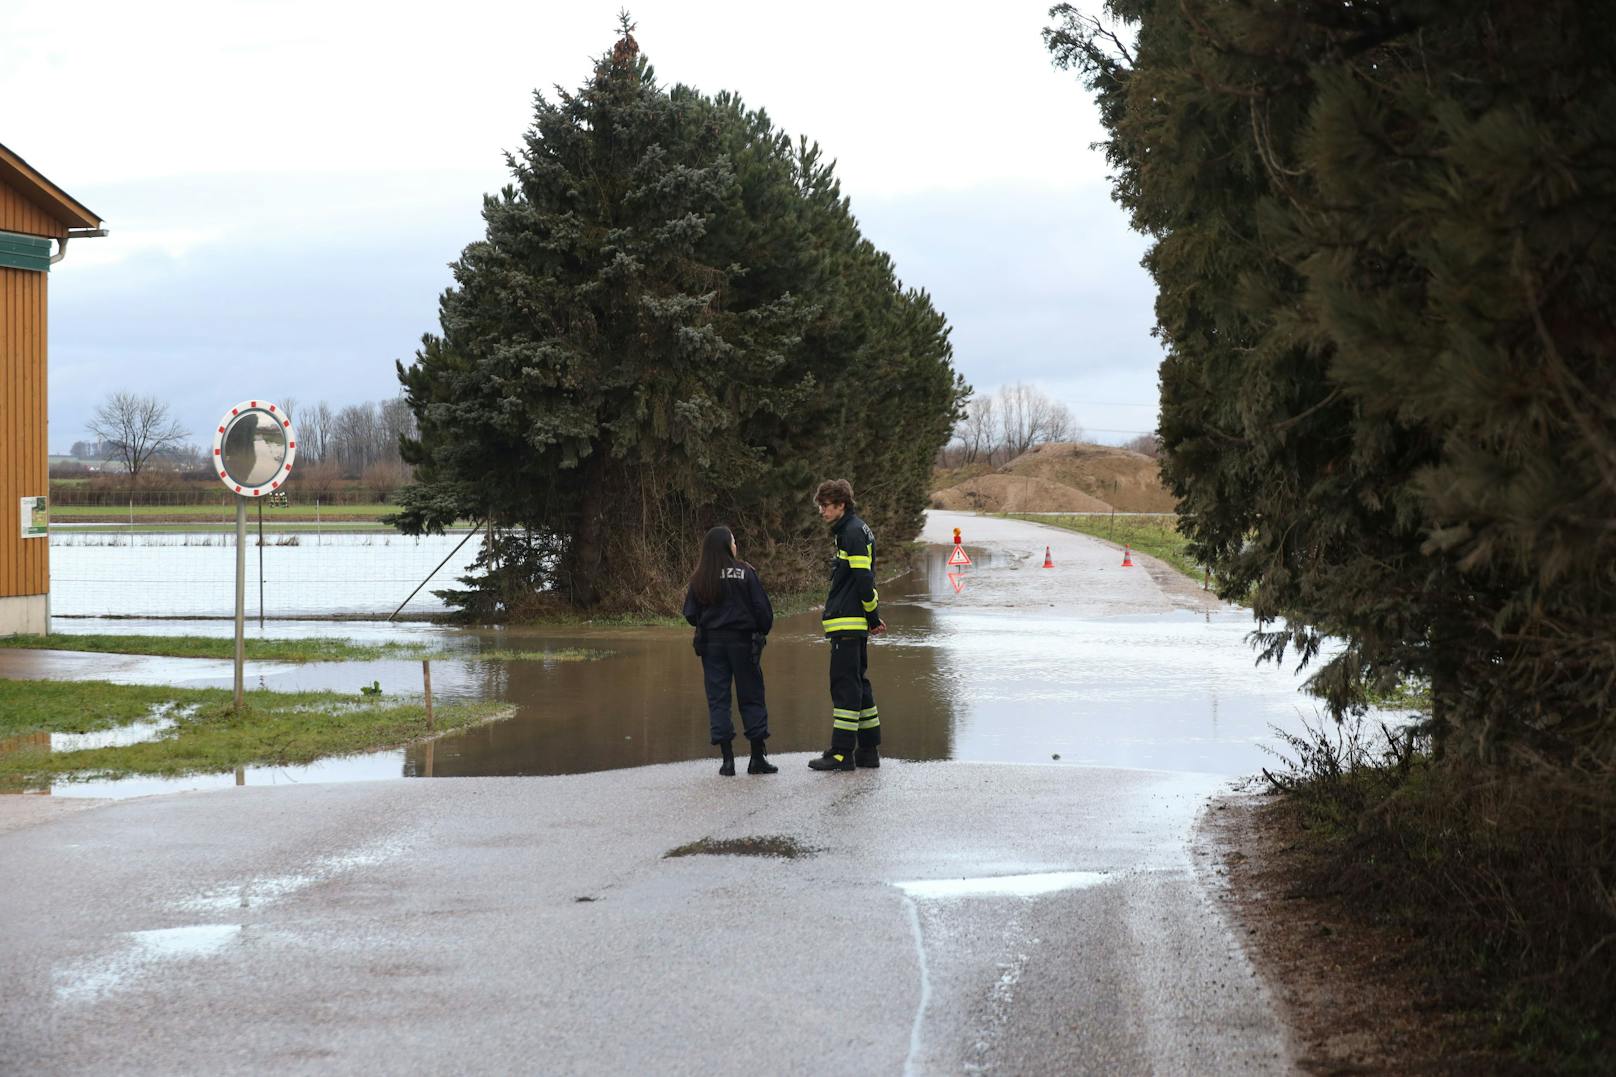 Das Weihnachtstauwetter hat in Teilen Oberösterreichs für Überflutungen gesorgt. Die Feuerwehr musste vielerorts am 24. Dezember ausrücken.